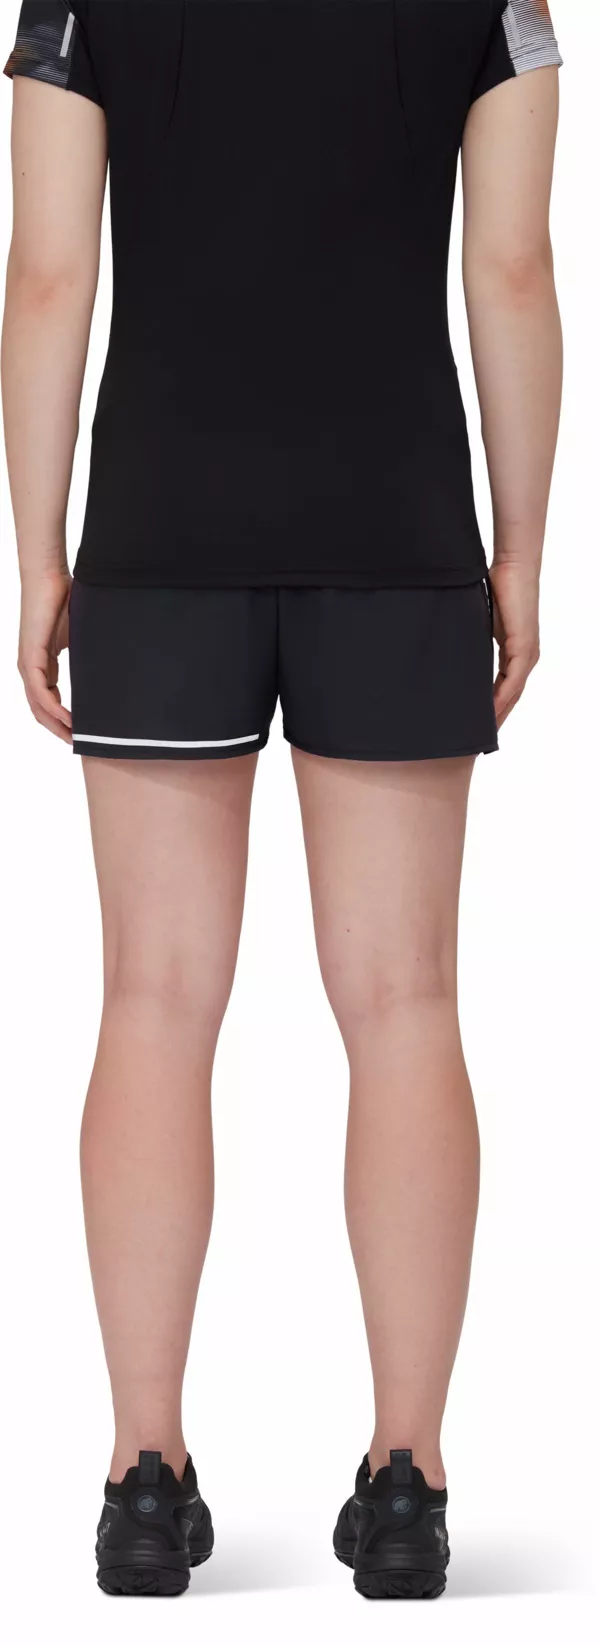 Zdjęcie 3 produktu Spodenki do biegania Aenergy TR 2 in 1 Shorts Women